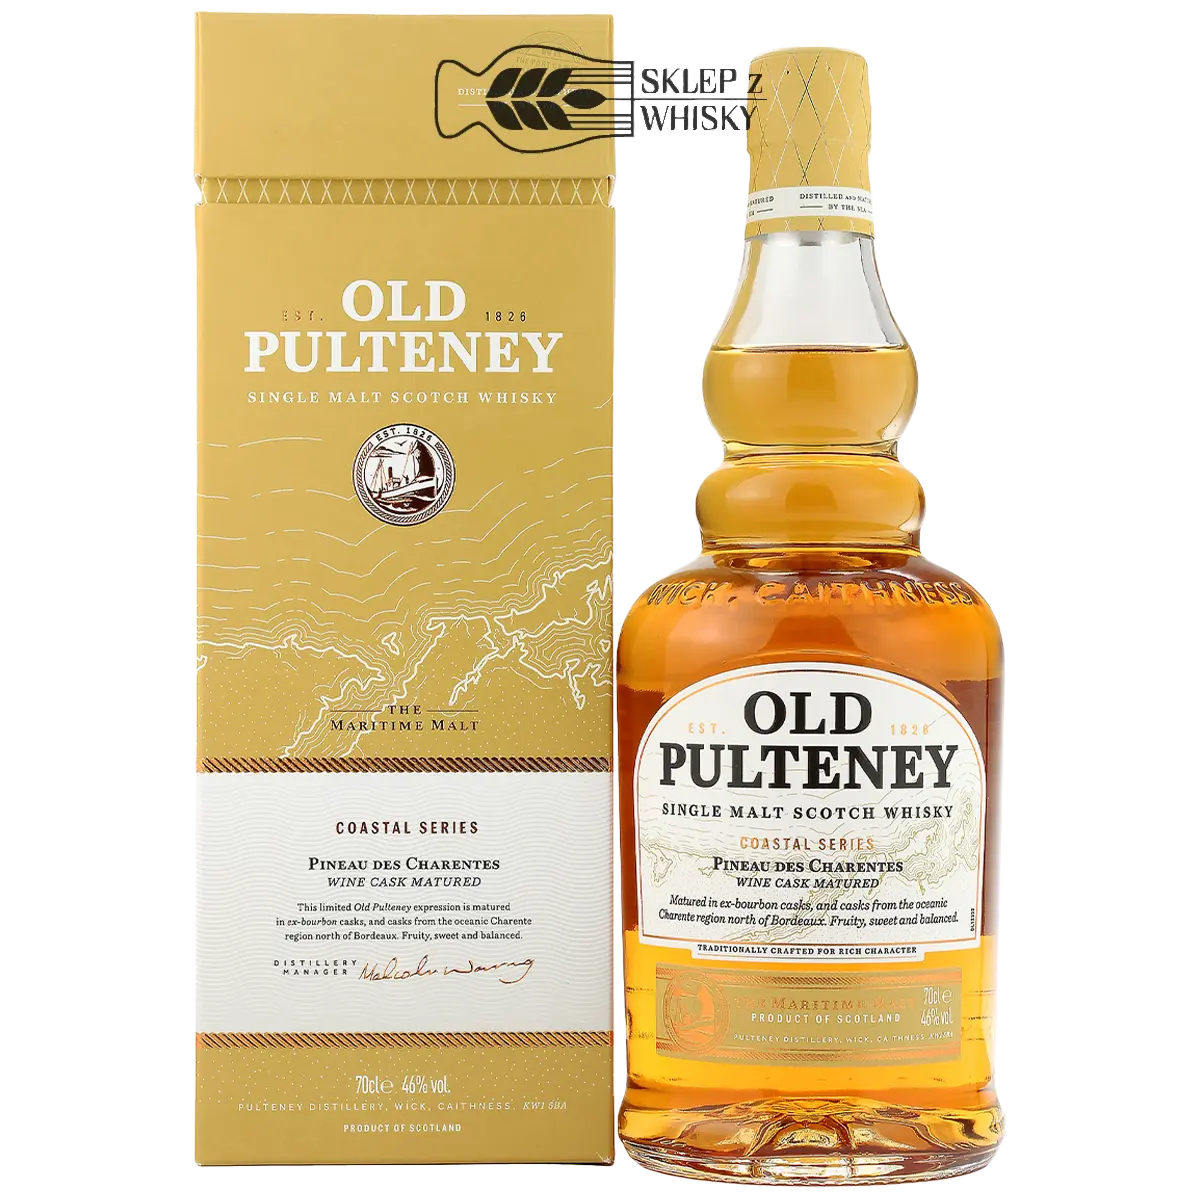 Old Pulteney Pineau Des Charentes - szkocka whisky single malt z regionu Speyside, 700 ml, w pudełku